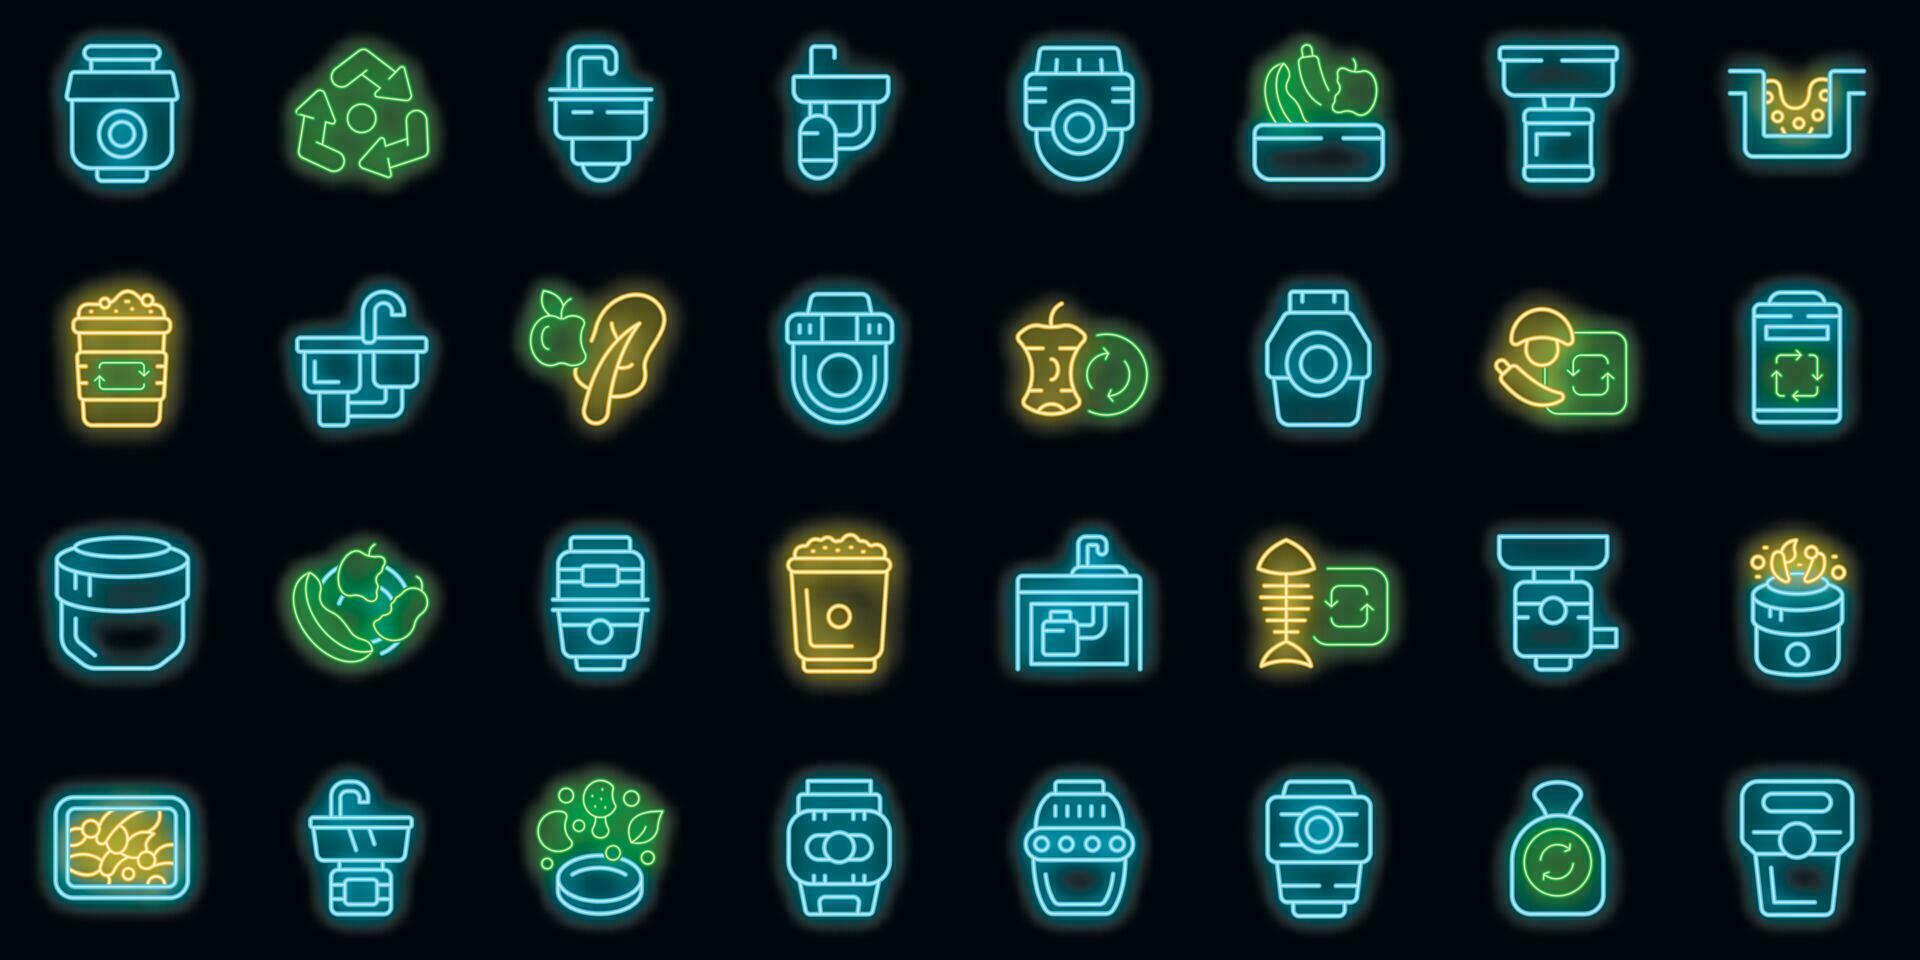 mat avfall kasserare ikoner uppsättning vektor neon